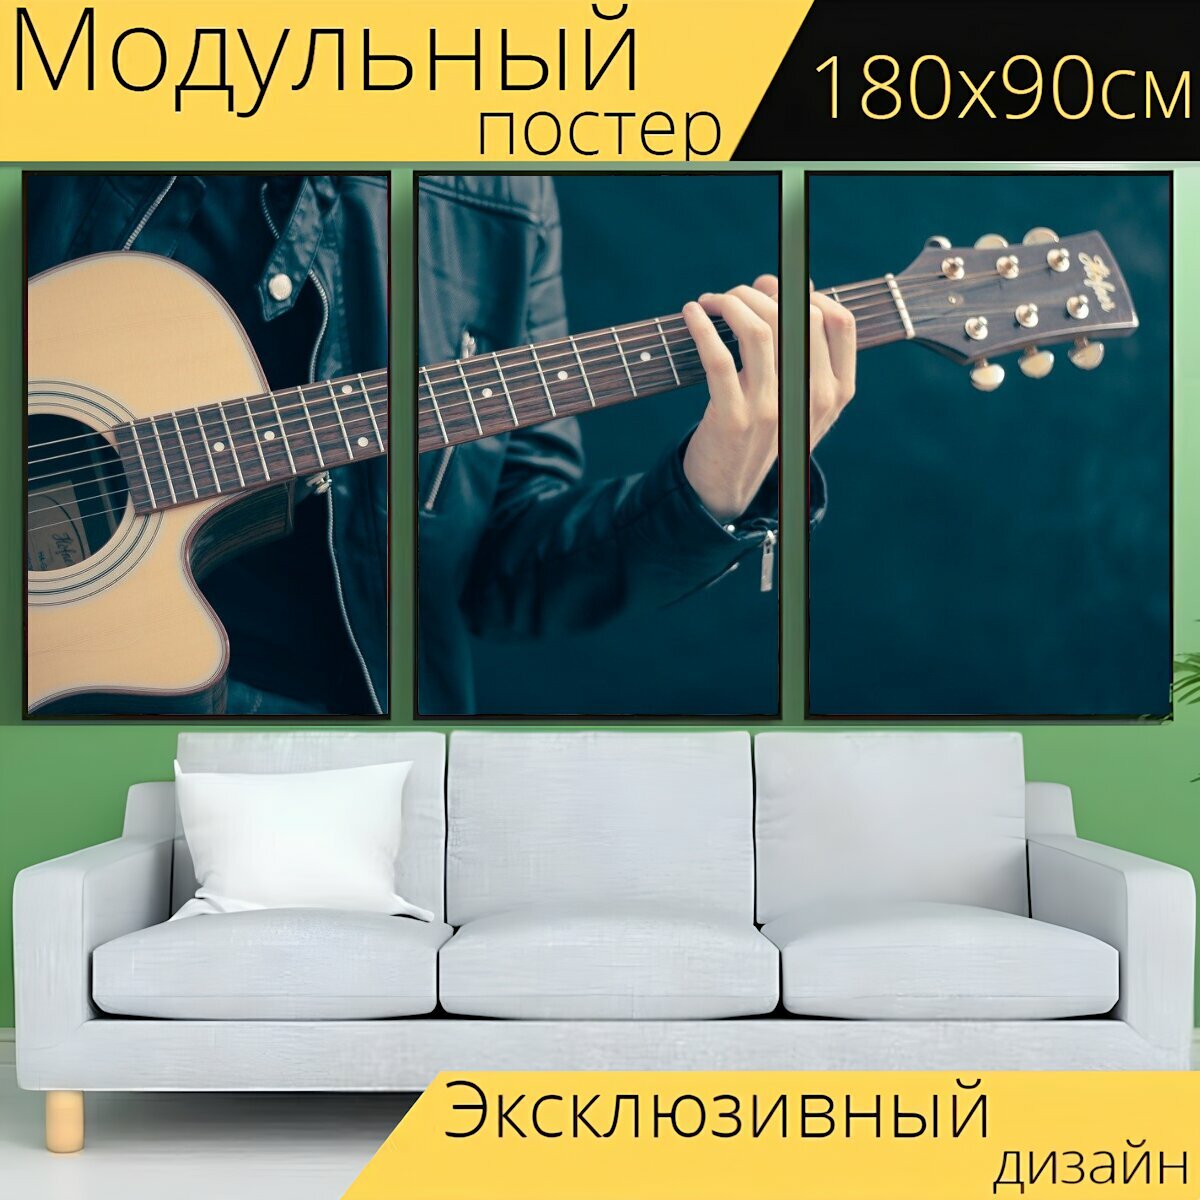 Модульный постер "Гитара, гитарист, музыка" 180 x 90 см. для интерьера